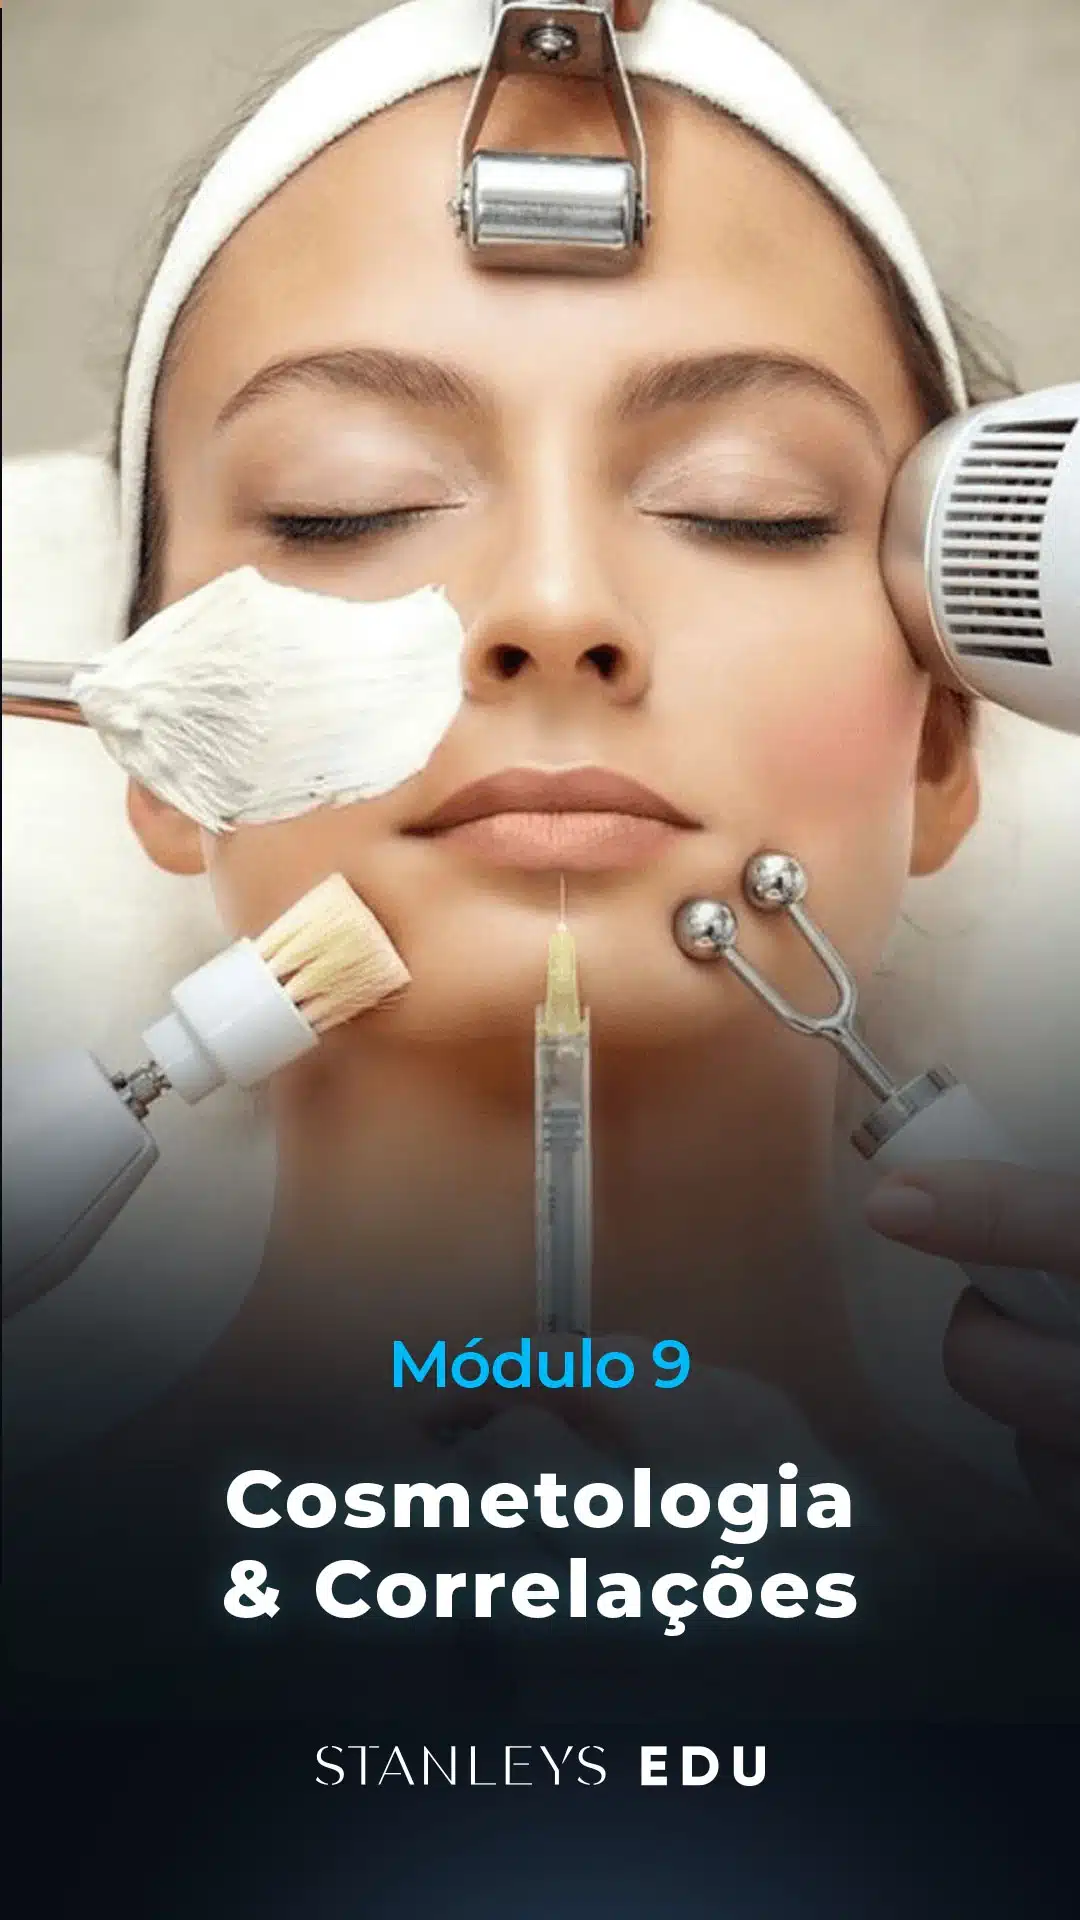 Modulo-9-Cosmetologia